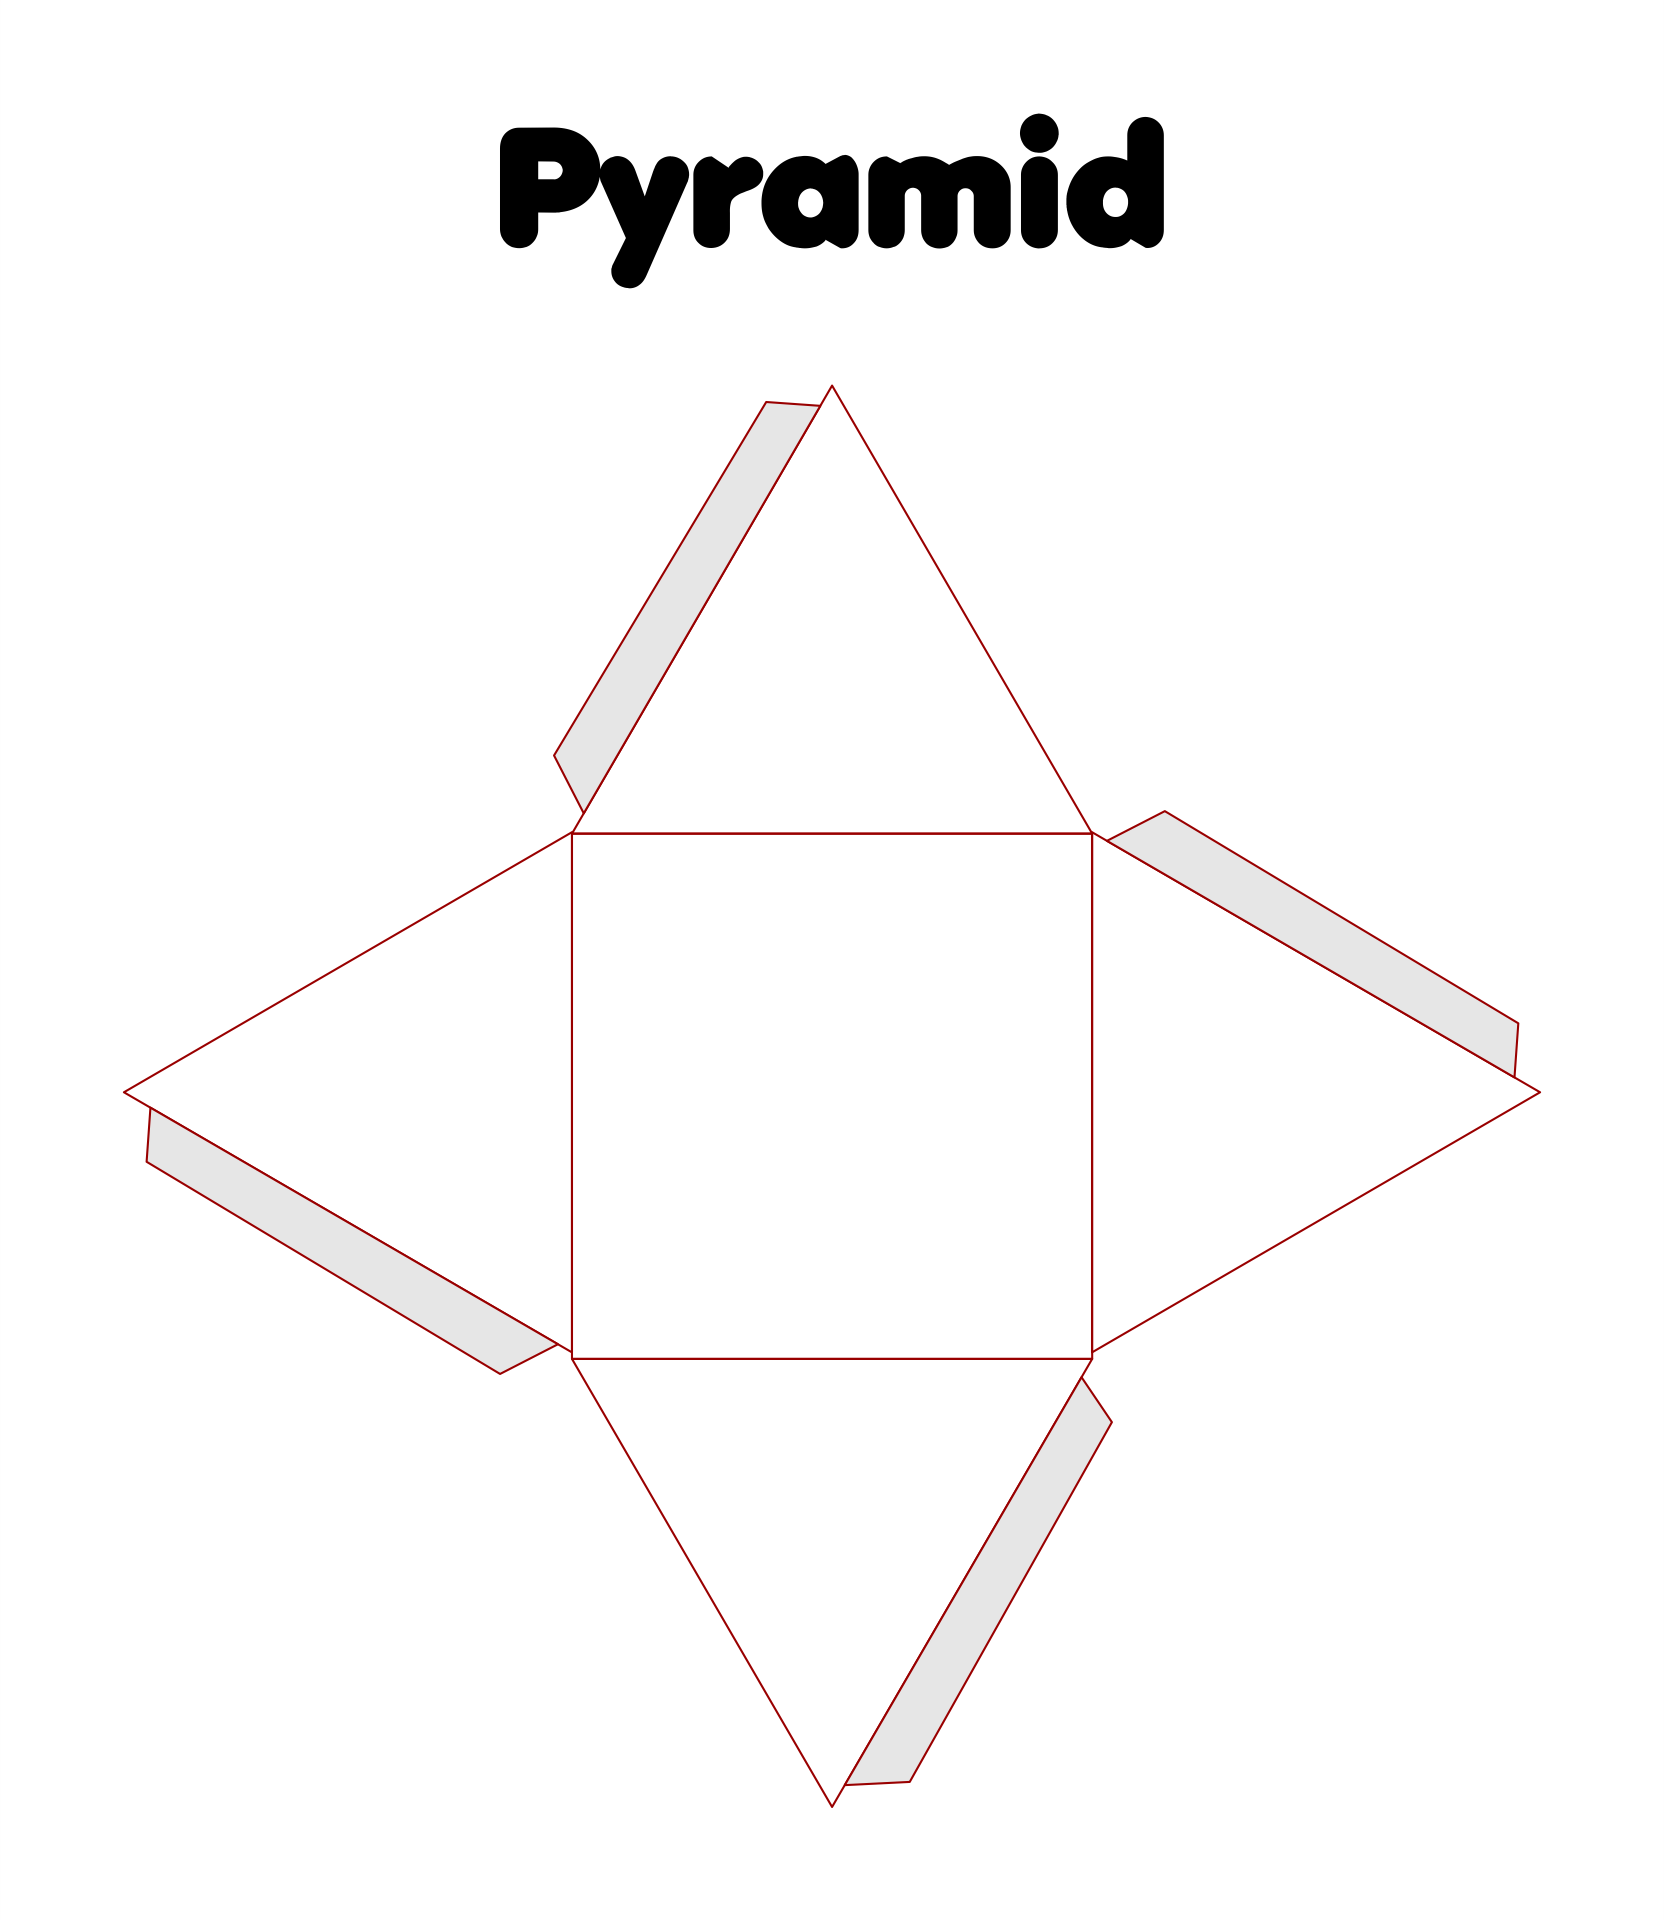 Pyramid Template Printable